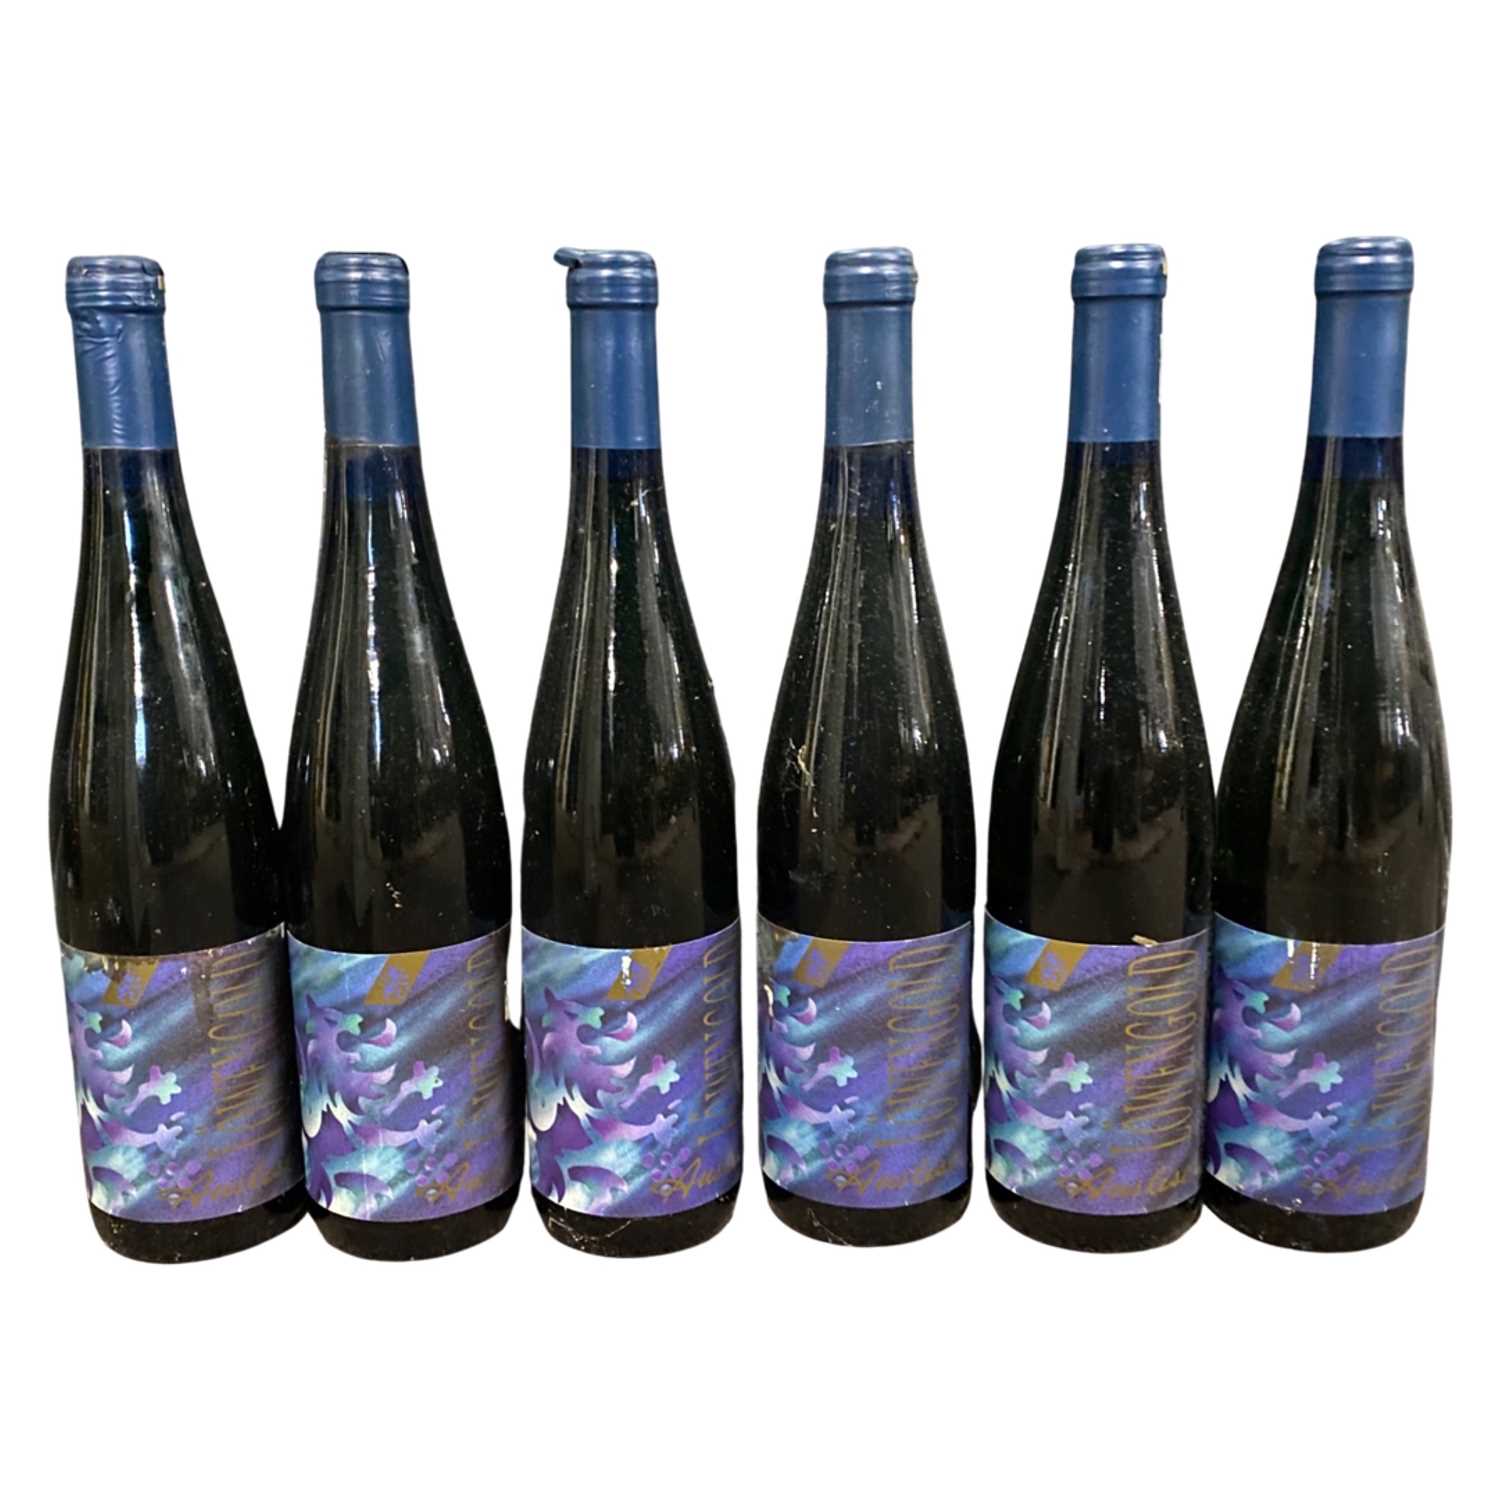 Six bottles of 1994 Löwengold Aussie